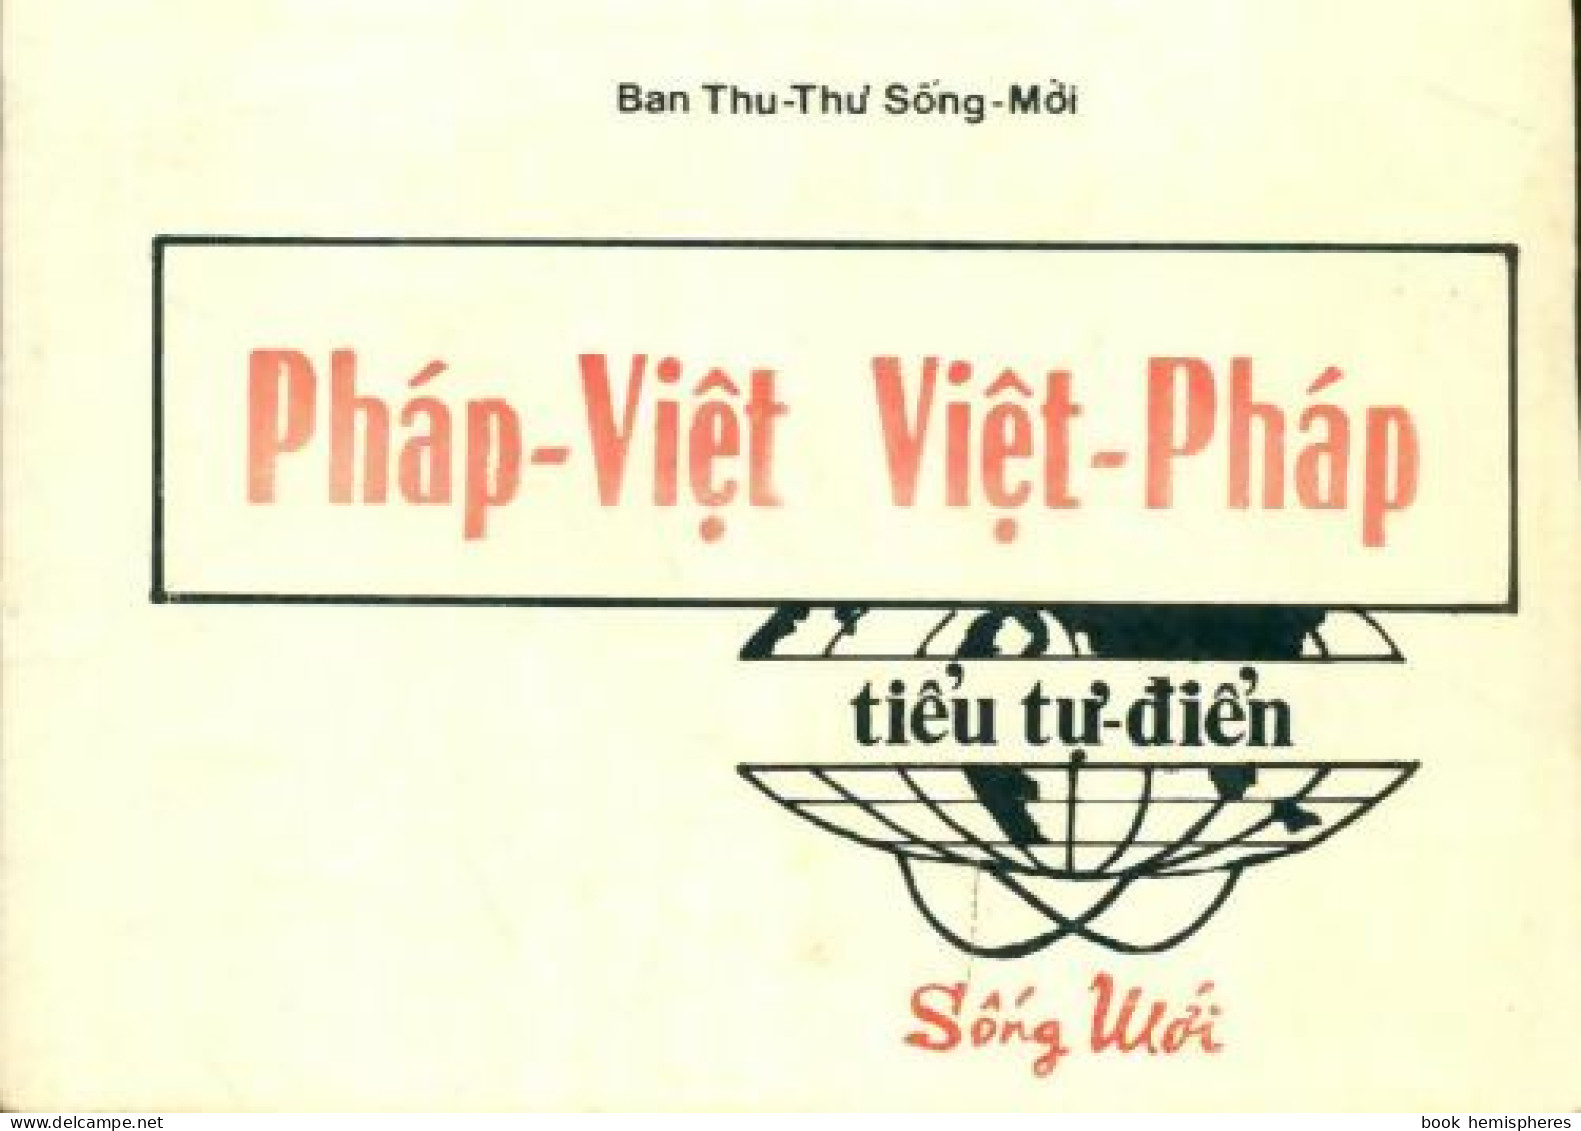 Phàp-Viêt, Viêt-Phàp (0) De Collectif - Dictionaries